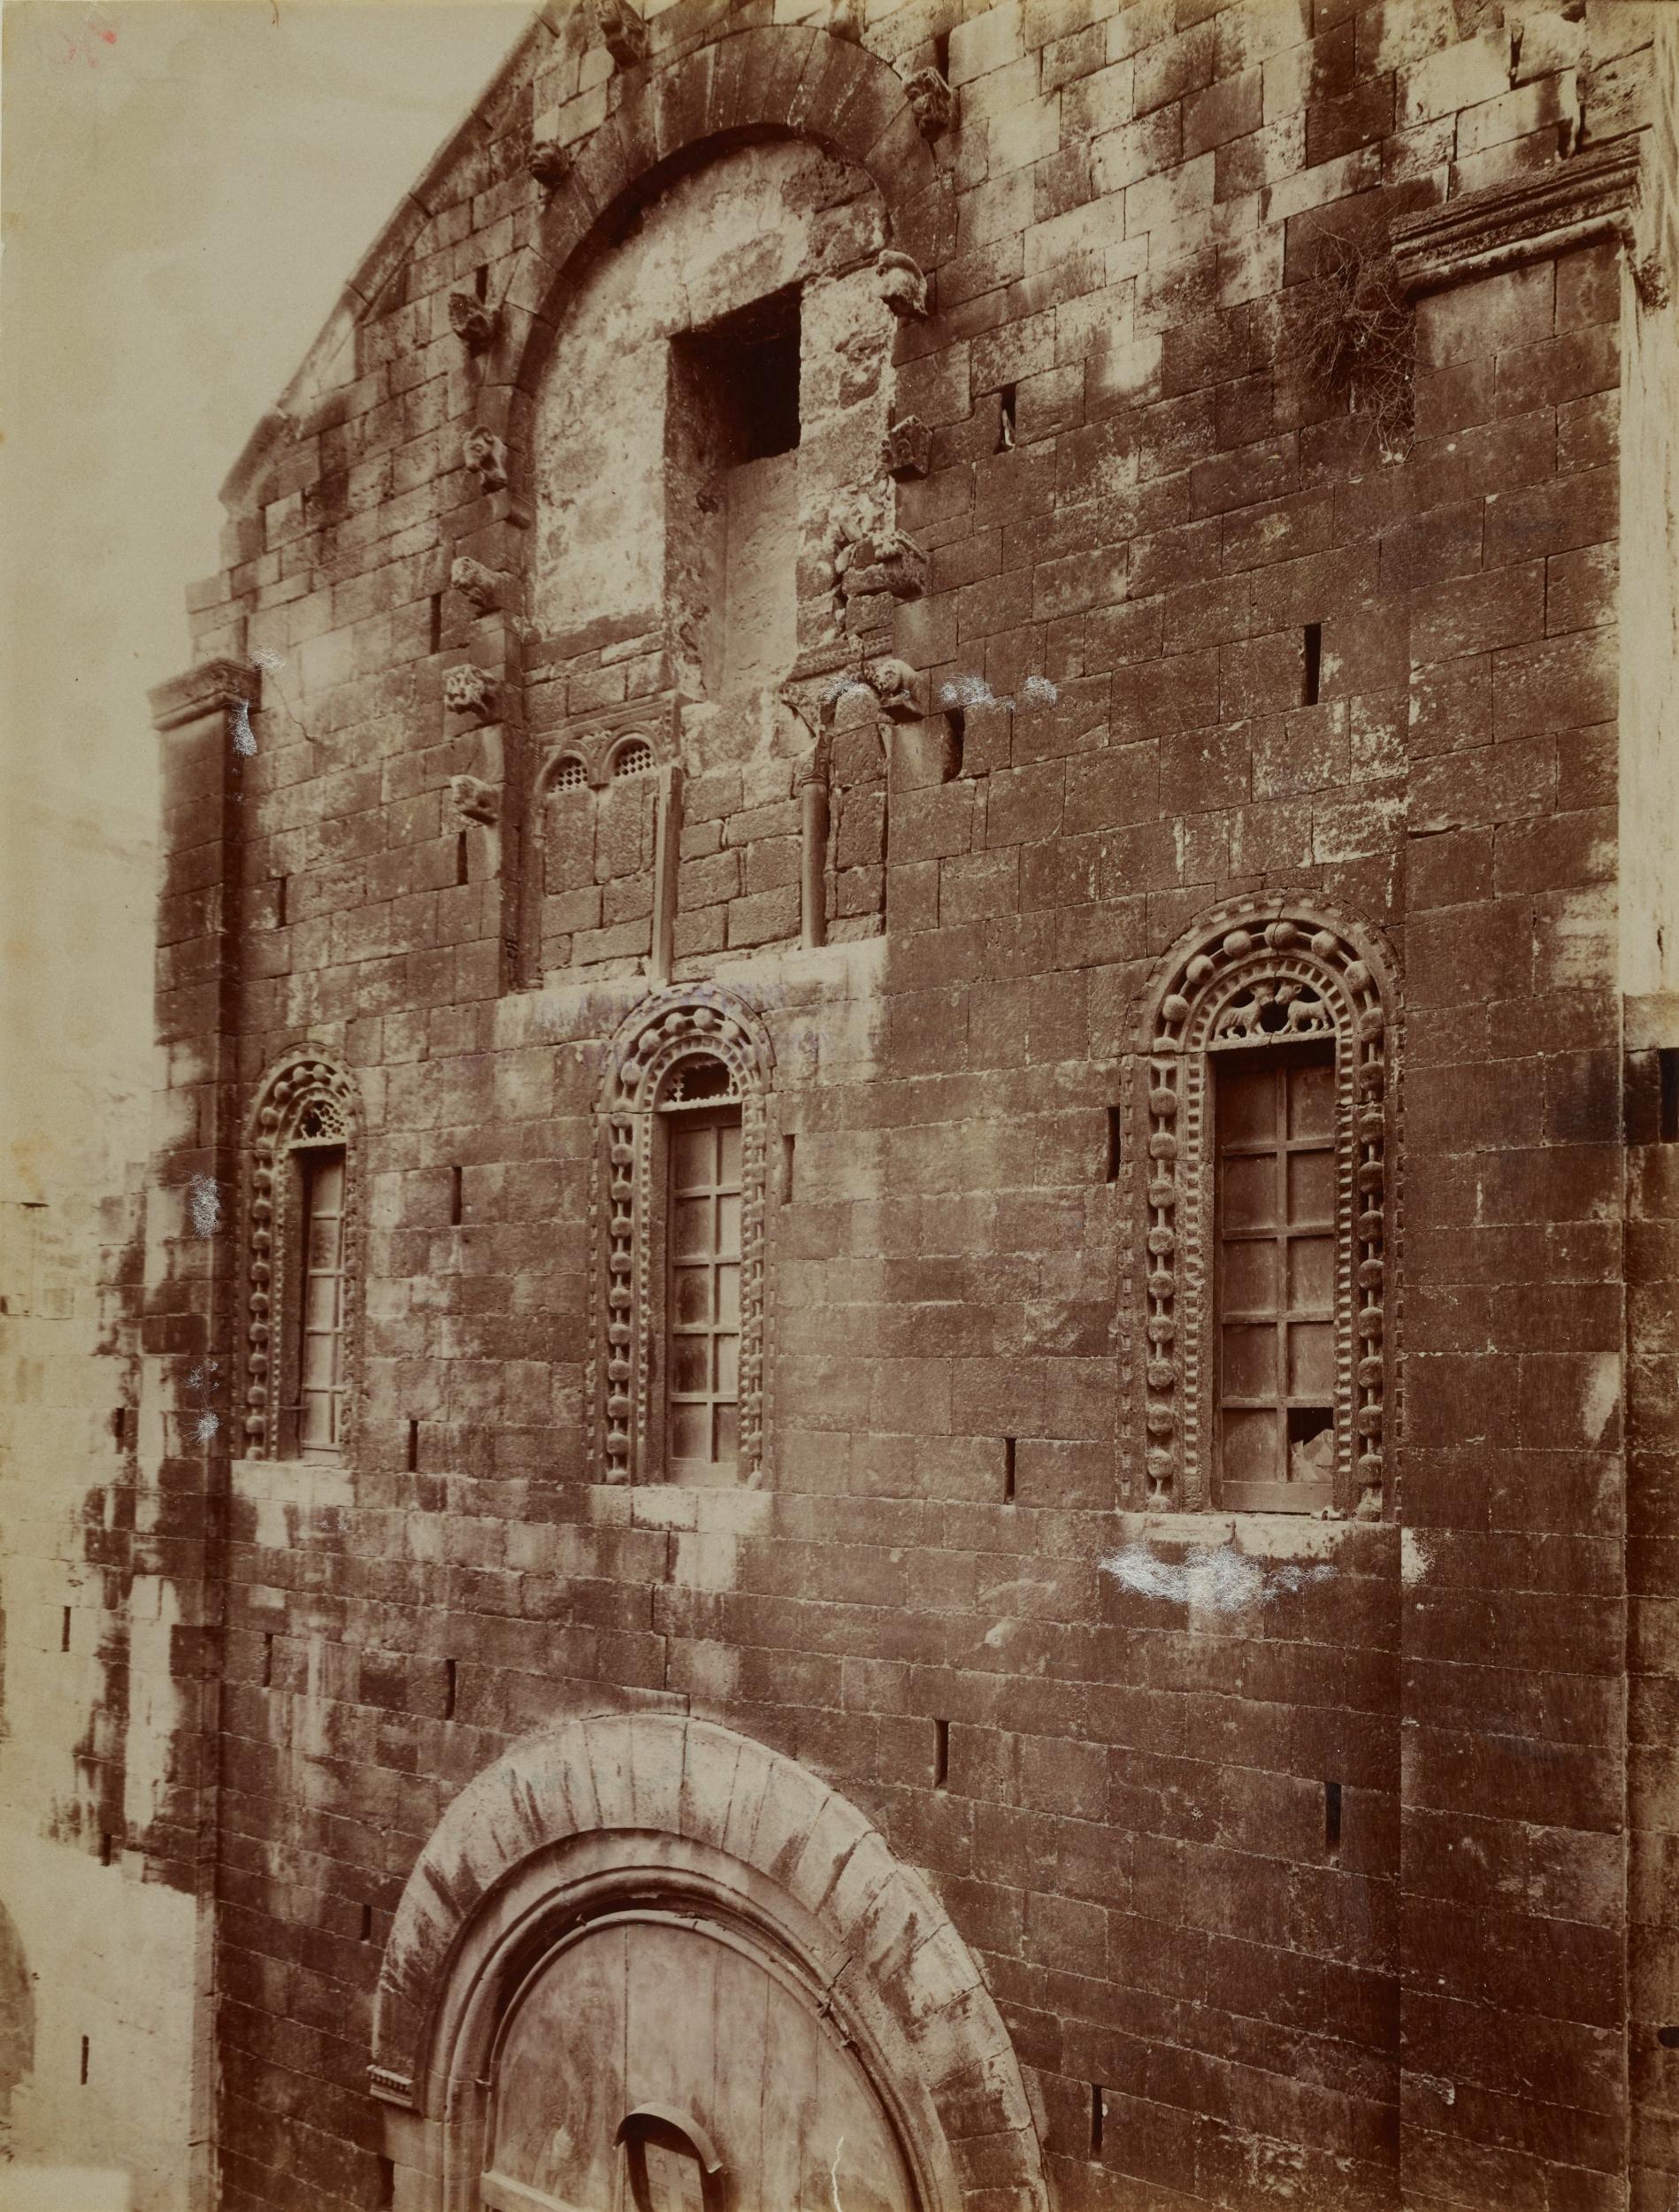 Fotografo non identificato, Bari - Chiesa di S. Gregorio, particolare della parte superiore della facciata prima dei Restauri, 1876-1900, albumina/carta, MPI136712